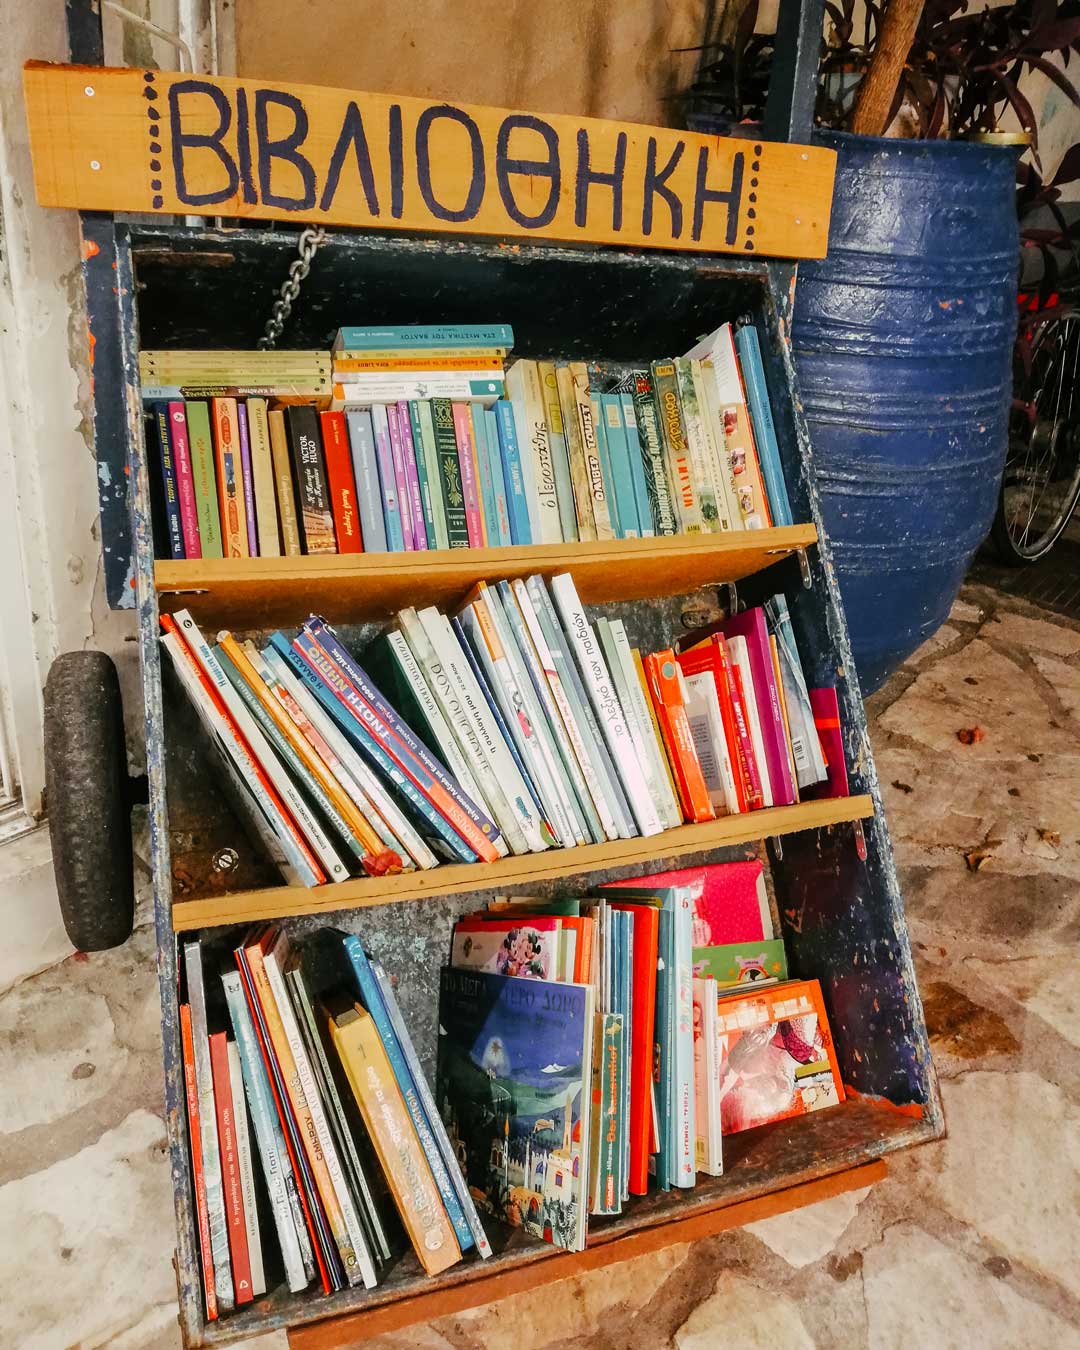 βιβλιοθήκη Πόρος travelshare.gr